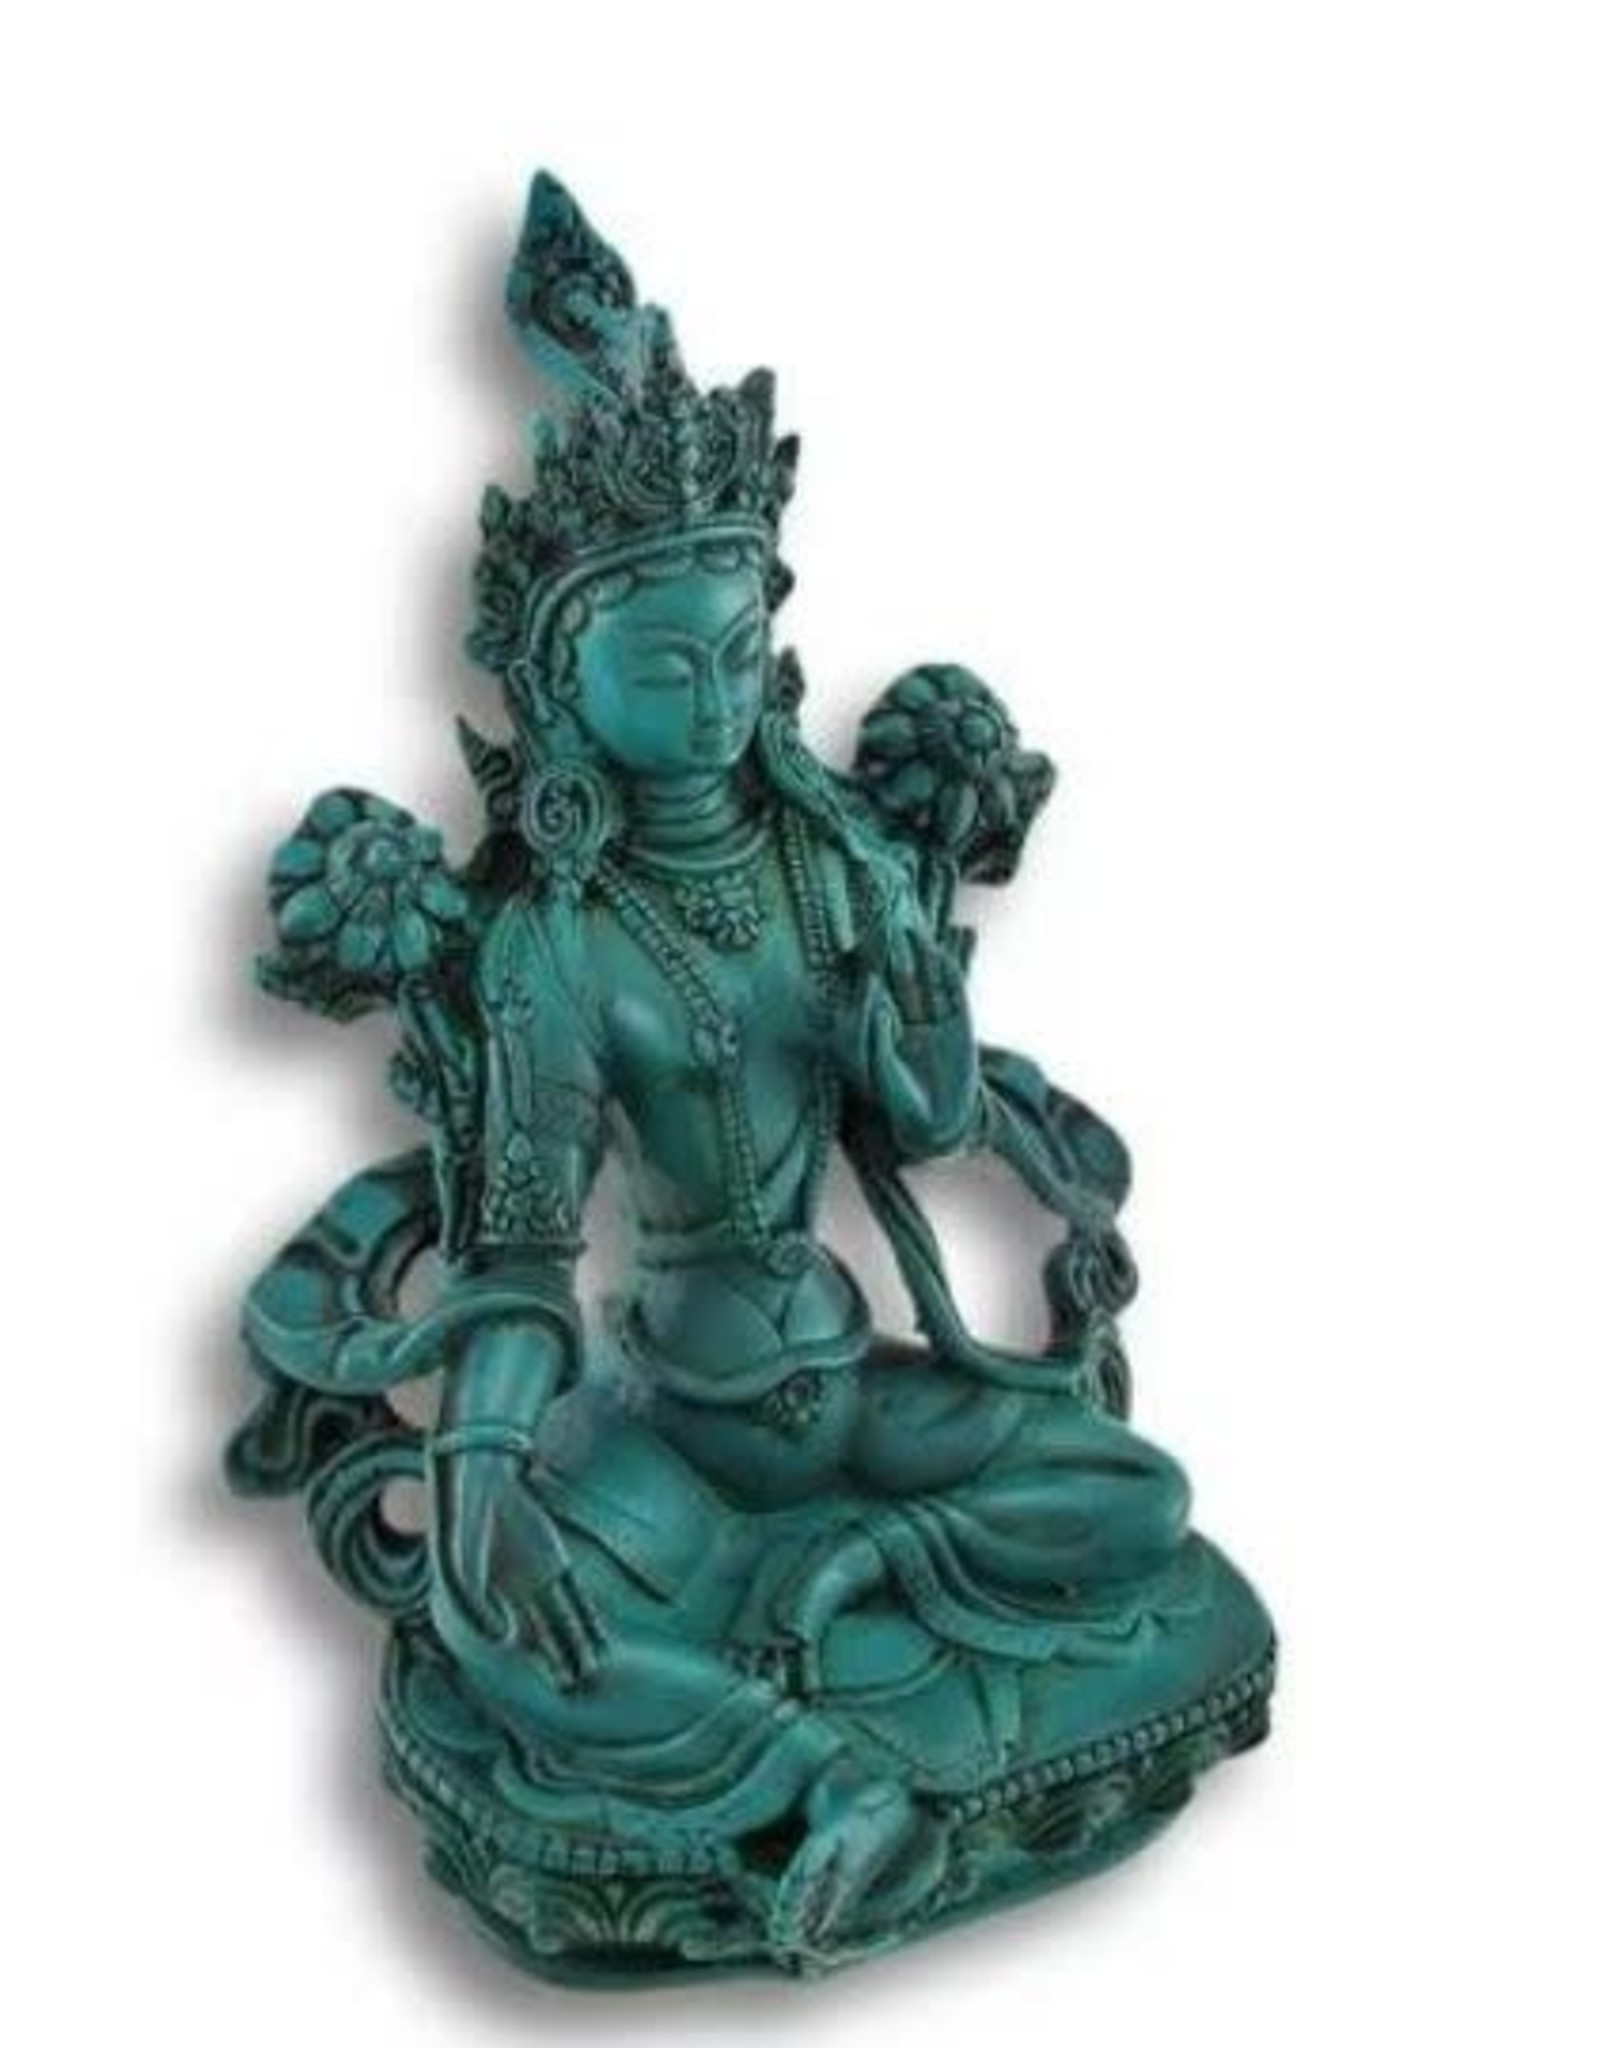 Green Tara Figurine Statue Antique Turquoise 4.25"